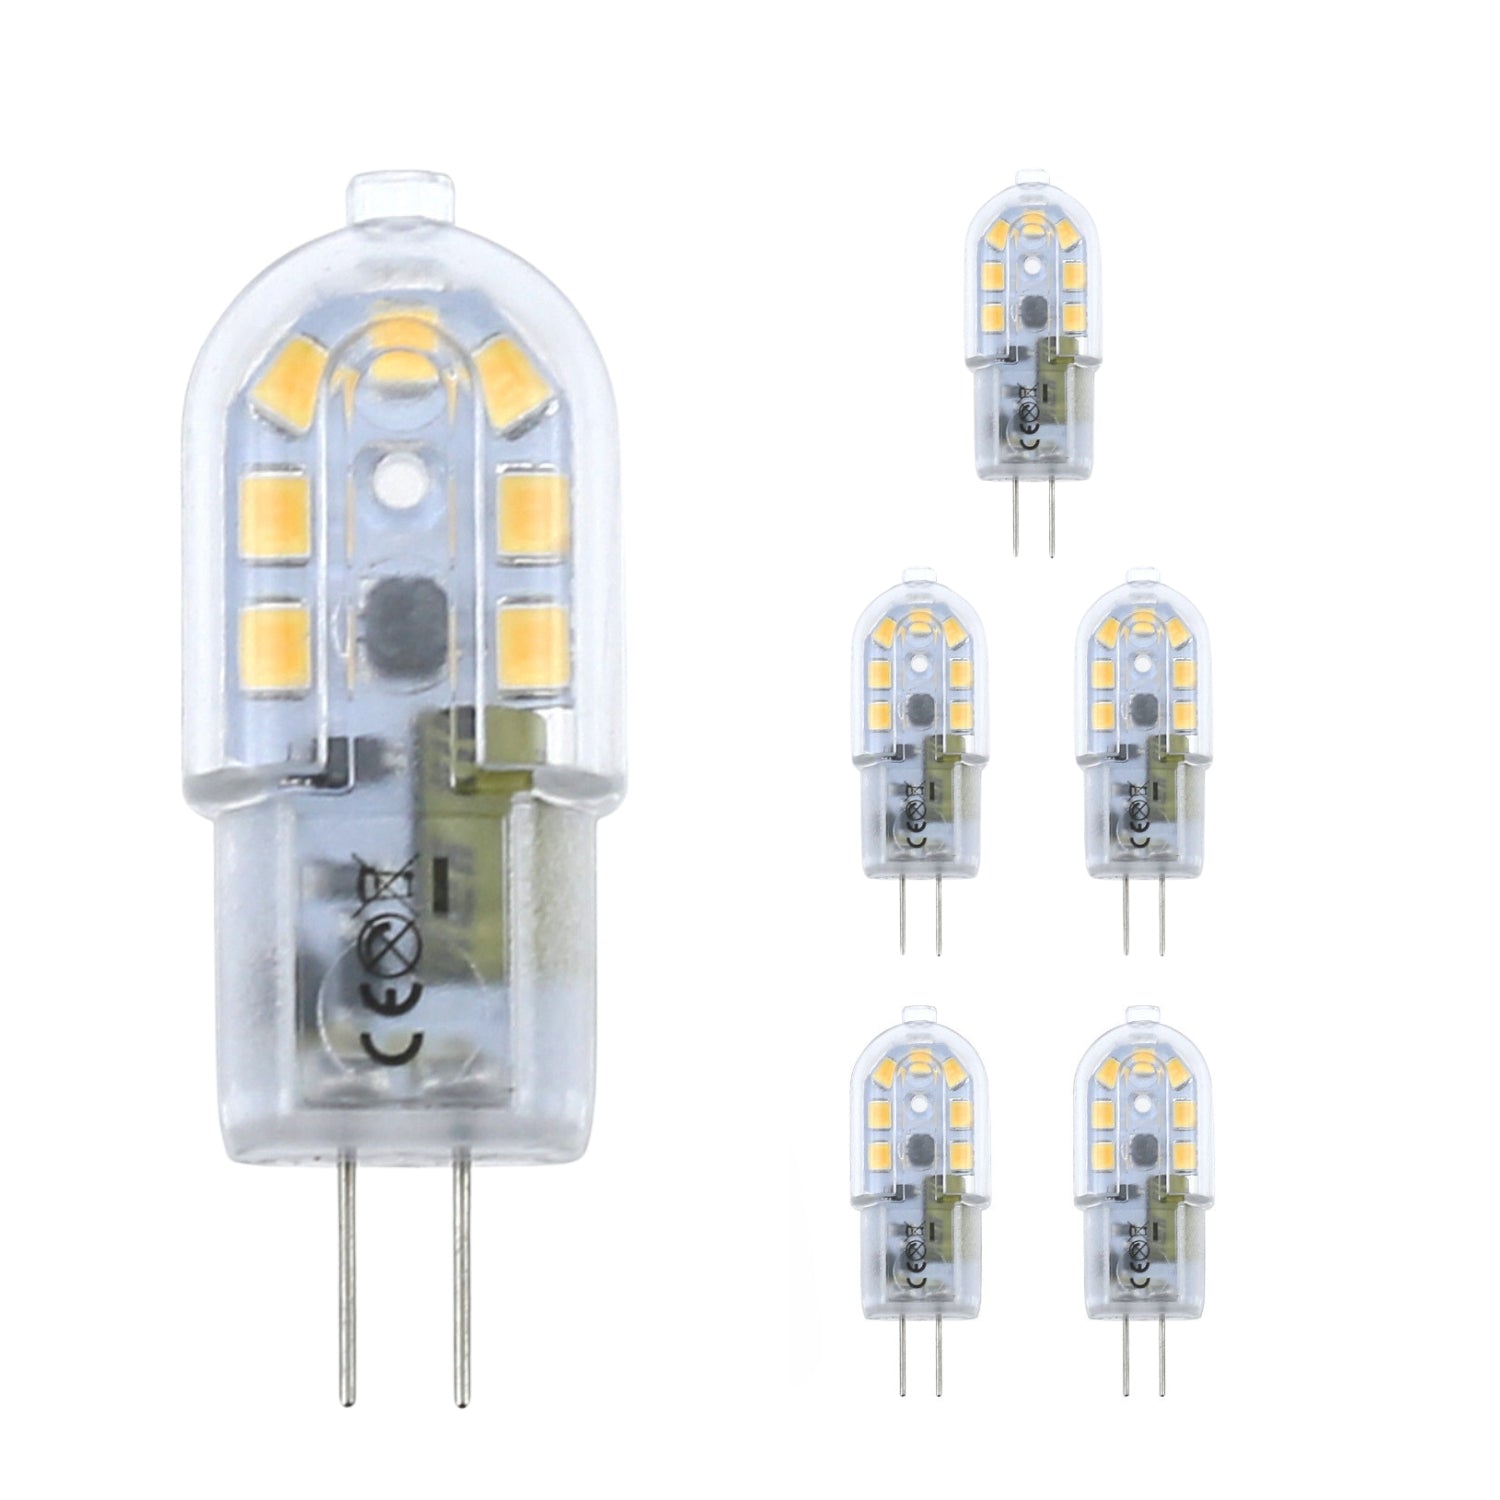 Lumina Lighting® G4 2W LED Bulb | 2W Bi-Pin Landscape LED Light | 12V 3000K Warm White, 190 Lumens | (6-Pack)